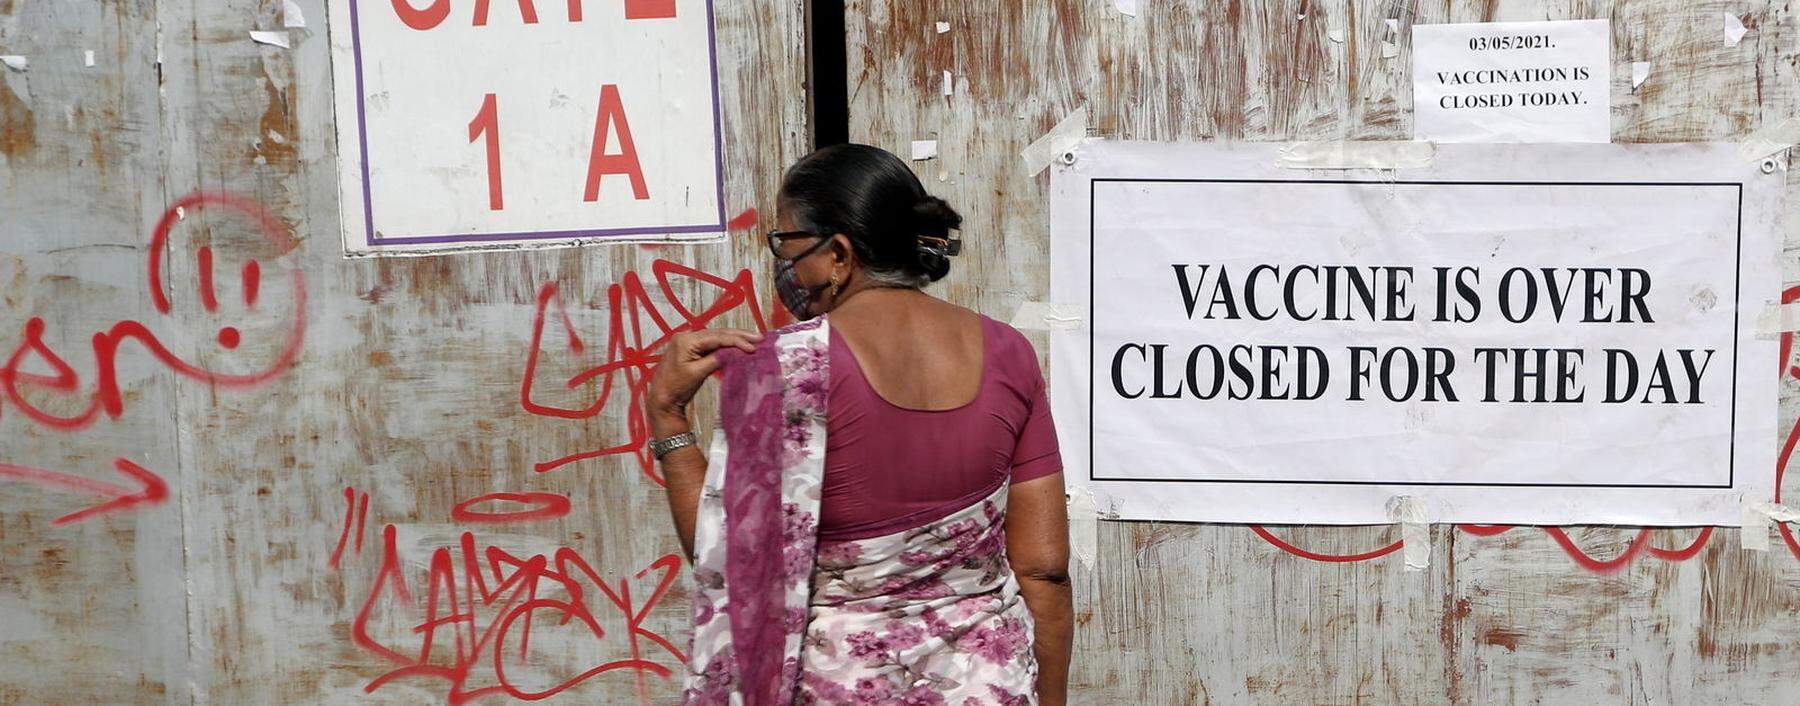 In Mumbai – wie in anderen indischen Metropolen – ist die Situation so dramatisch, dass die Behörden das Impfprogramm eingestellt haben.